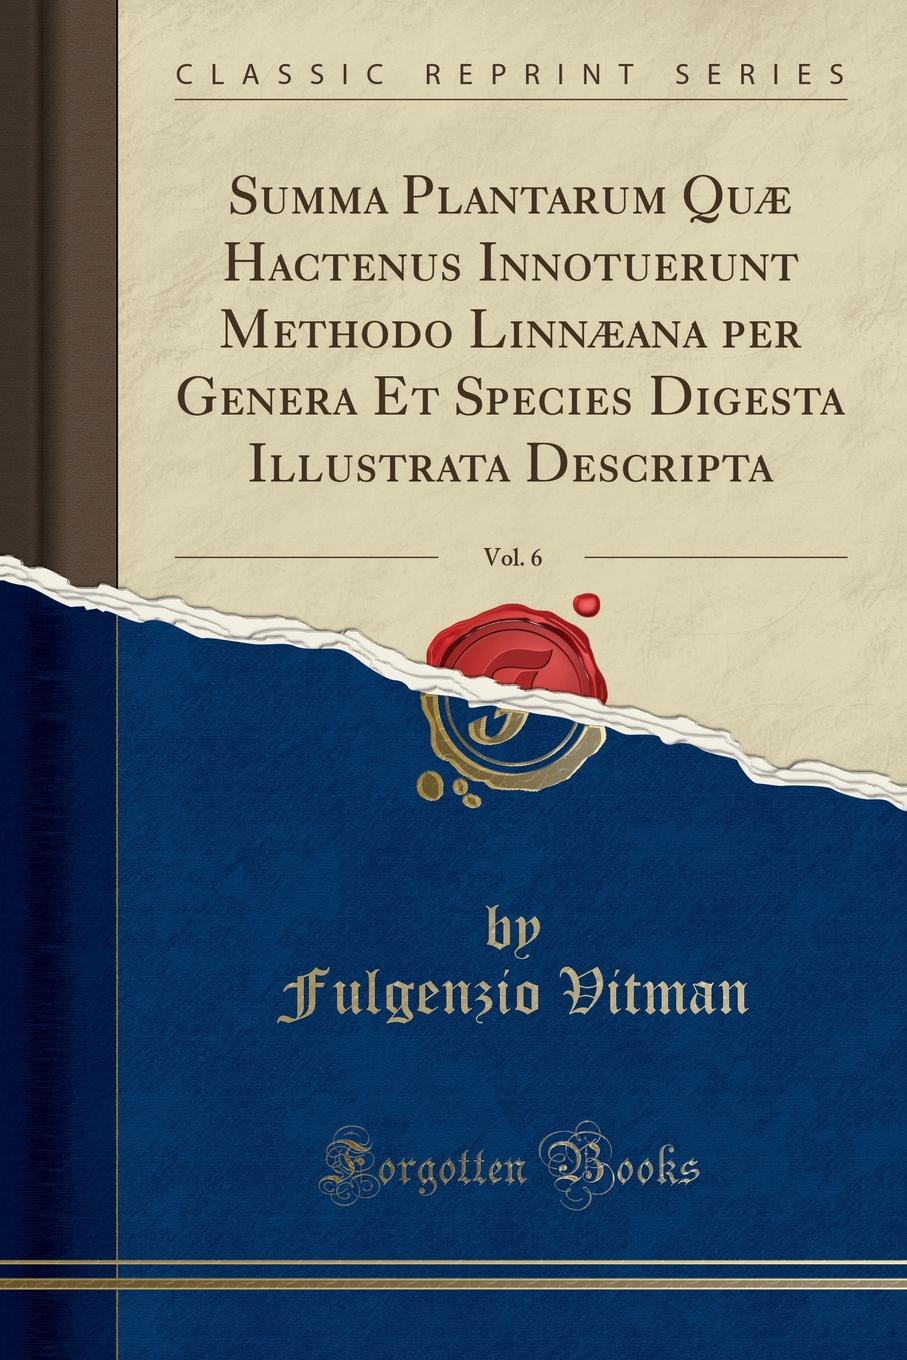 Fulgenzio Vitman Summa Plantarum Quae Hactenus Innotuerunt Methodo Linnaeana per Genera Et Species Digesta Illustrata Descripta, Vol. 6 (Classic Reprint)